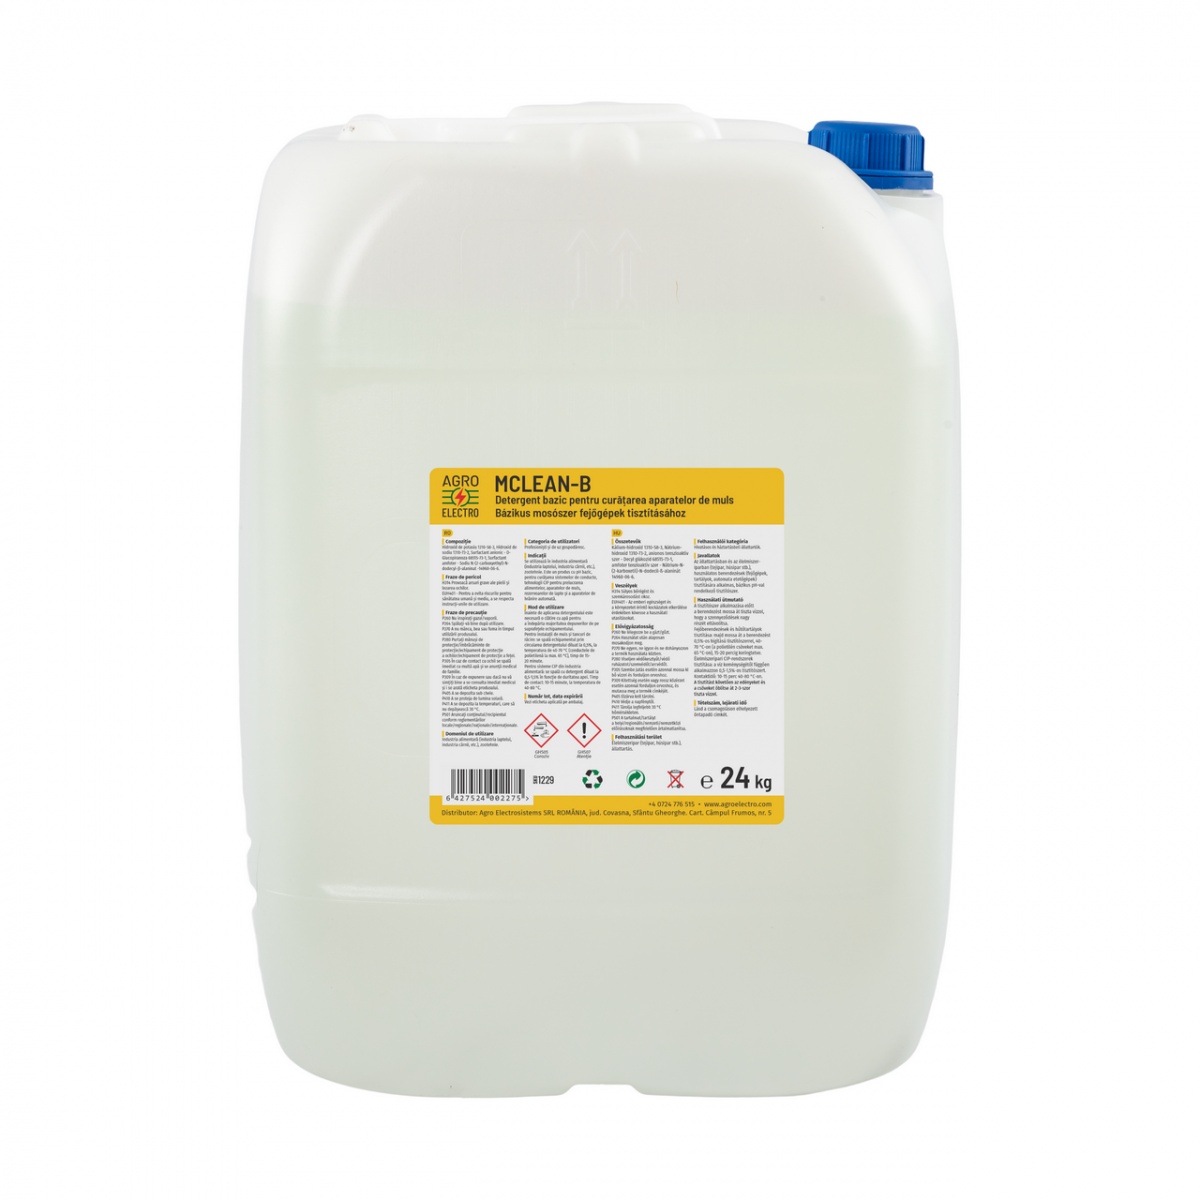 Detergent bazic pentru curățarea aparatelor de muls, MCLEAN-B, 24 kg